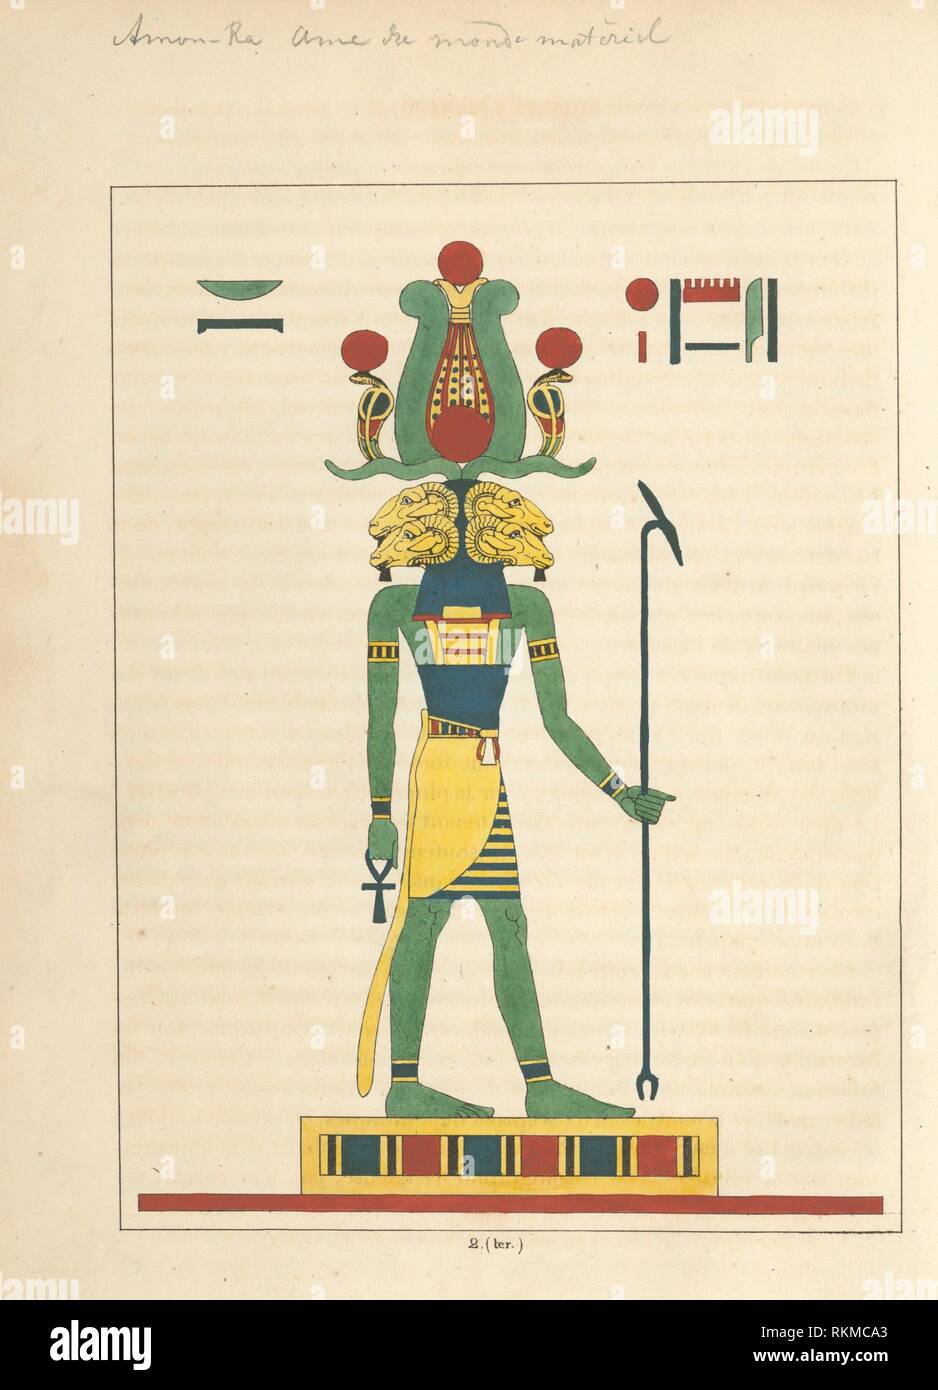 Amon-ra Amon. (El espíritu de los cuatro elementos, el alma del mundo material.) Dubois, L. J. J. (León Juan José) (artista). Panteón egipcio: Foto de stock